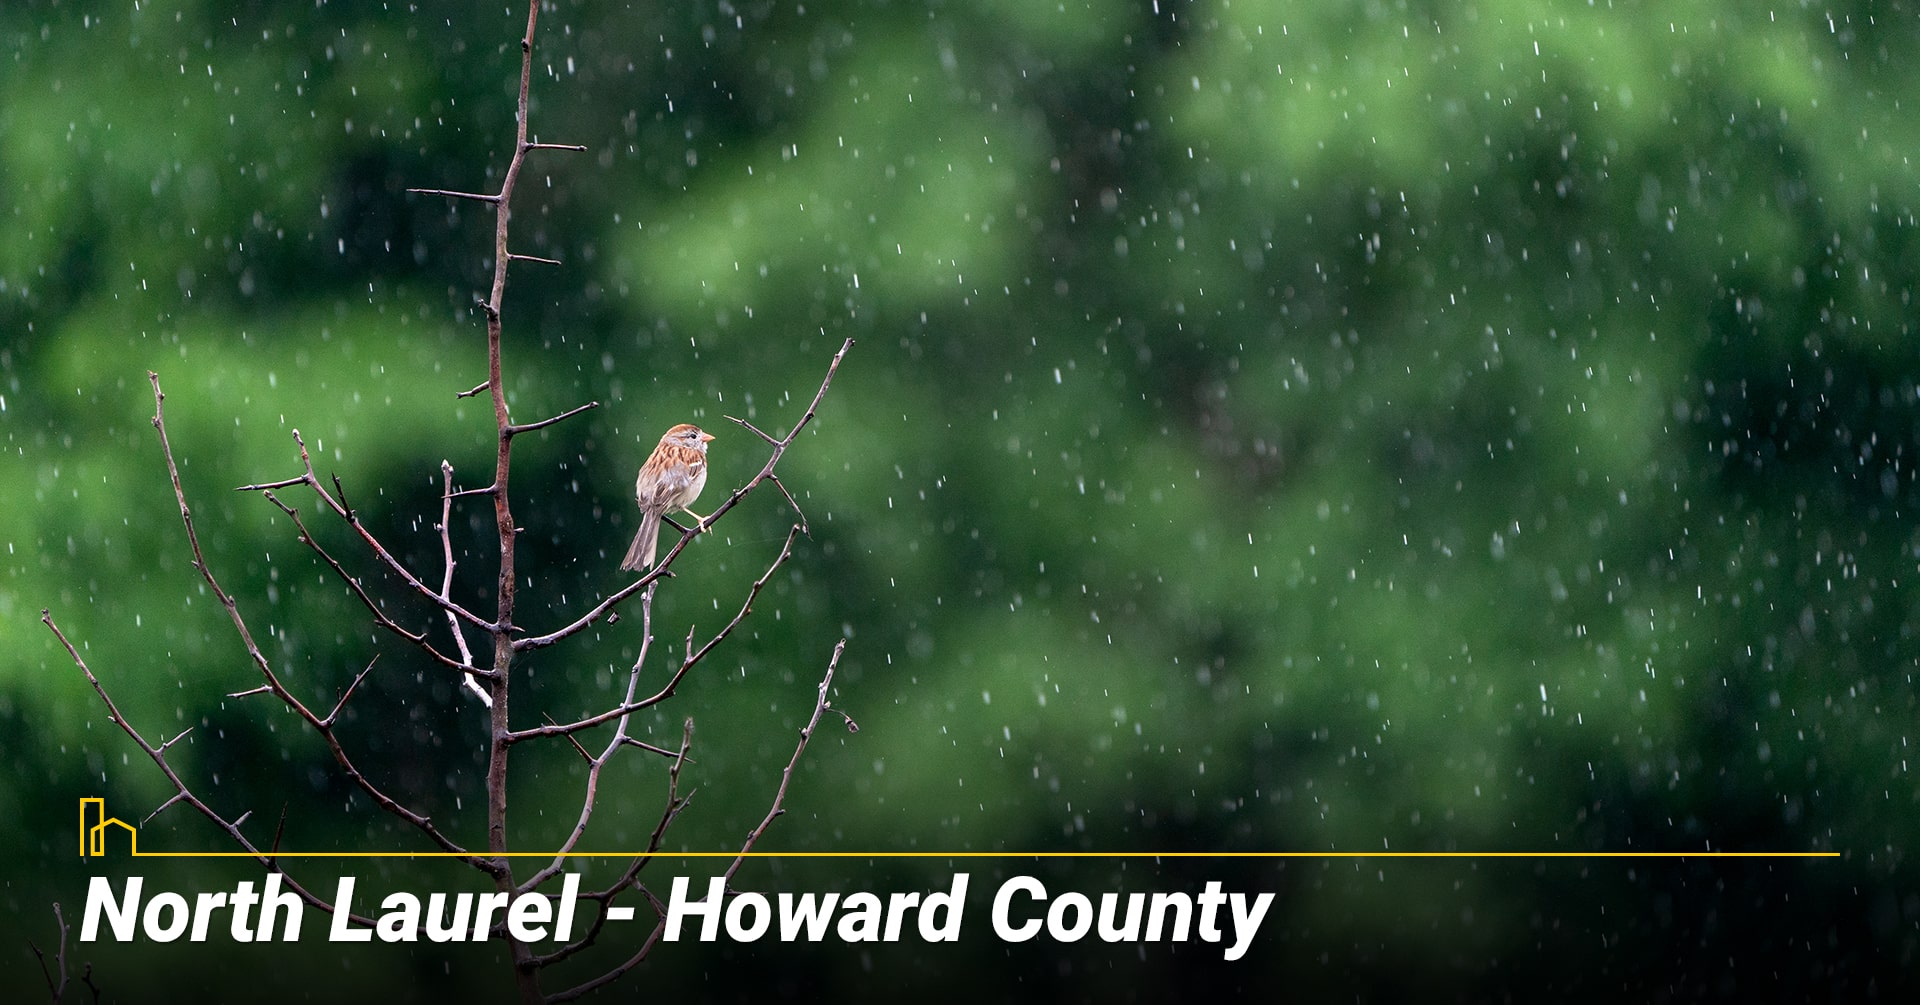 North Laurel - Howard County